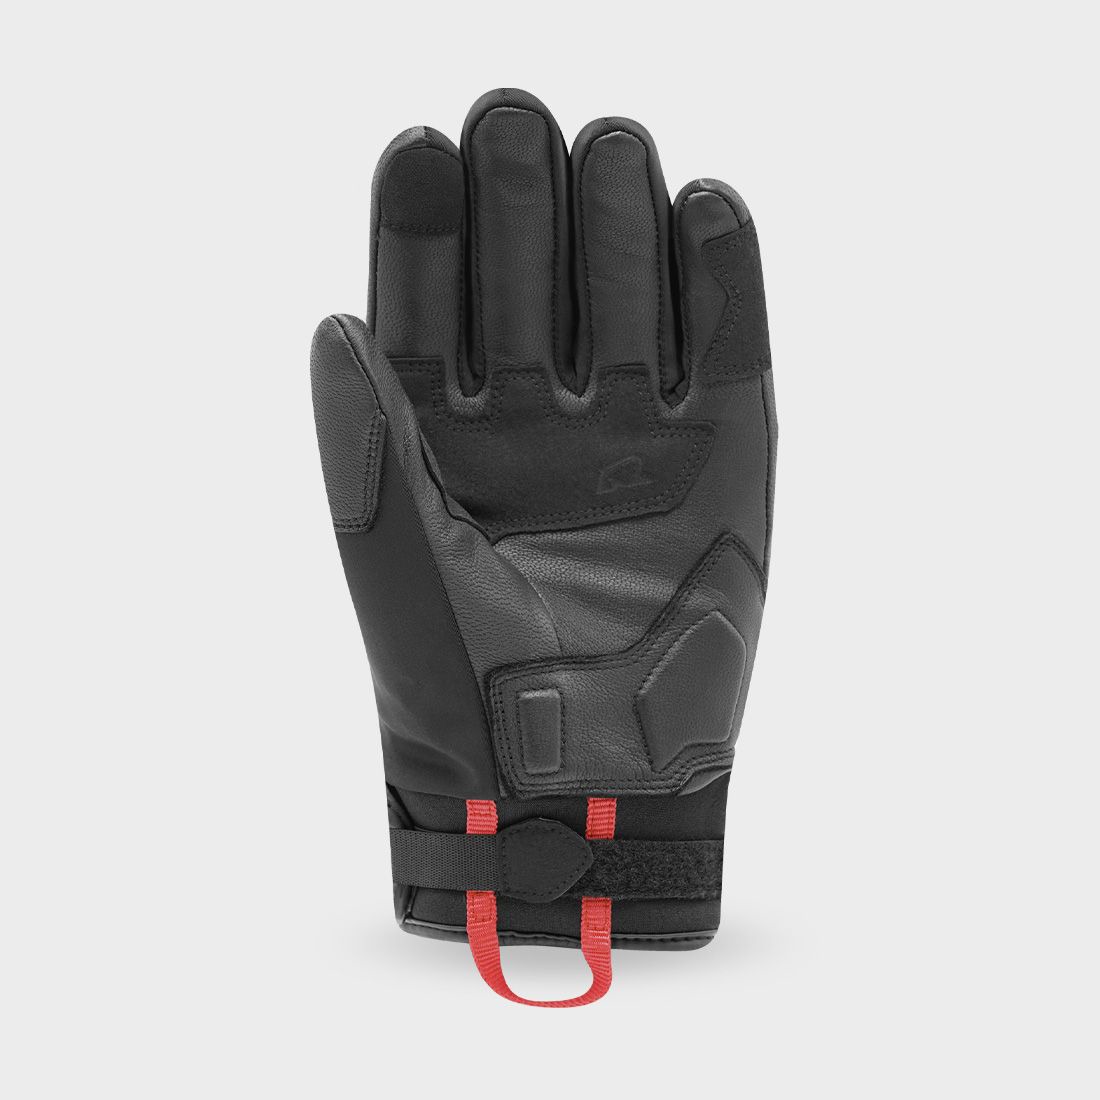 gloves RONIN WINTER, RACER (black)